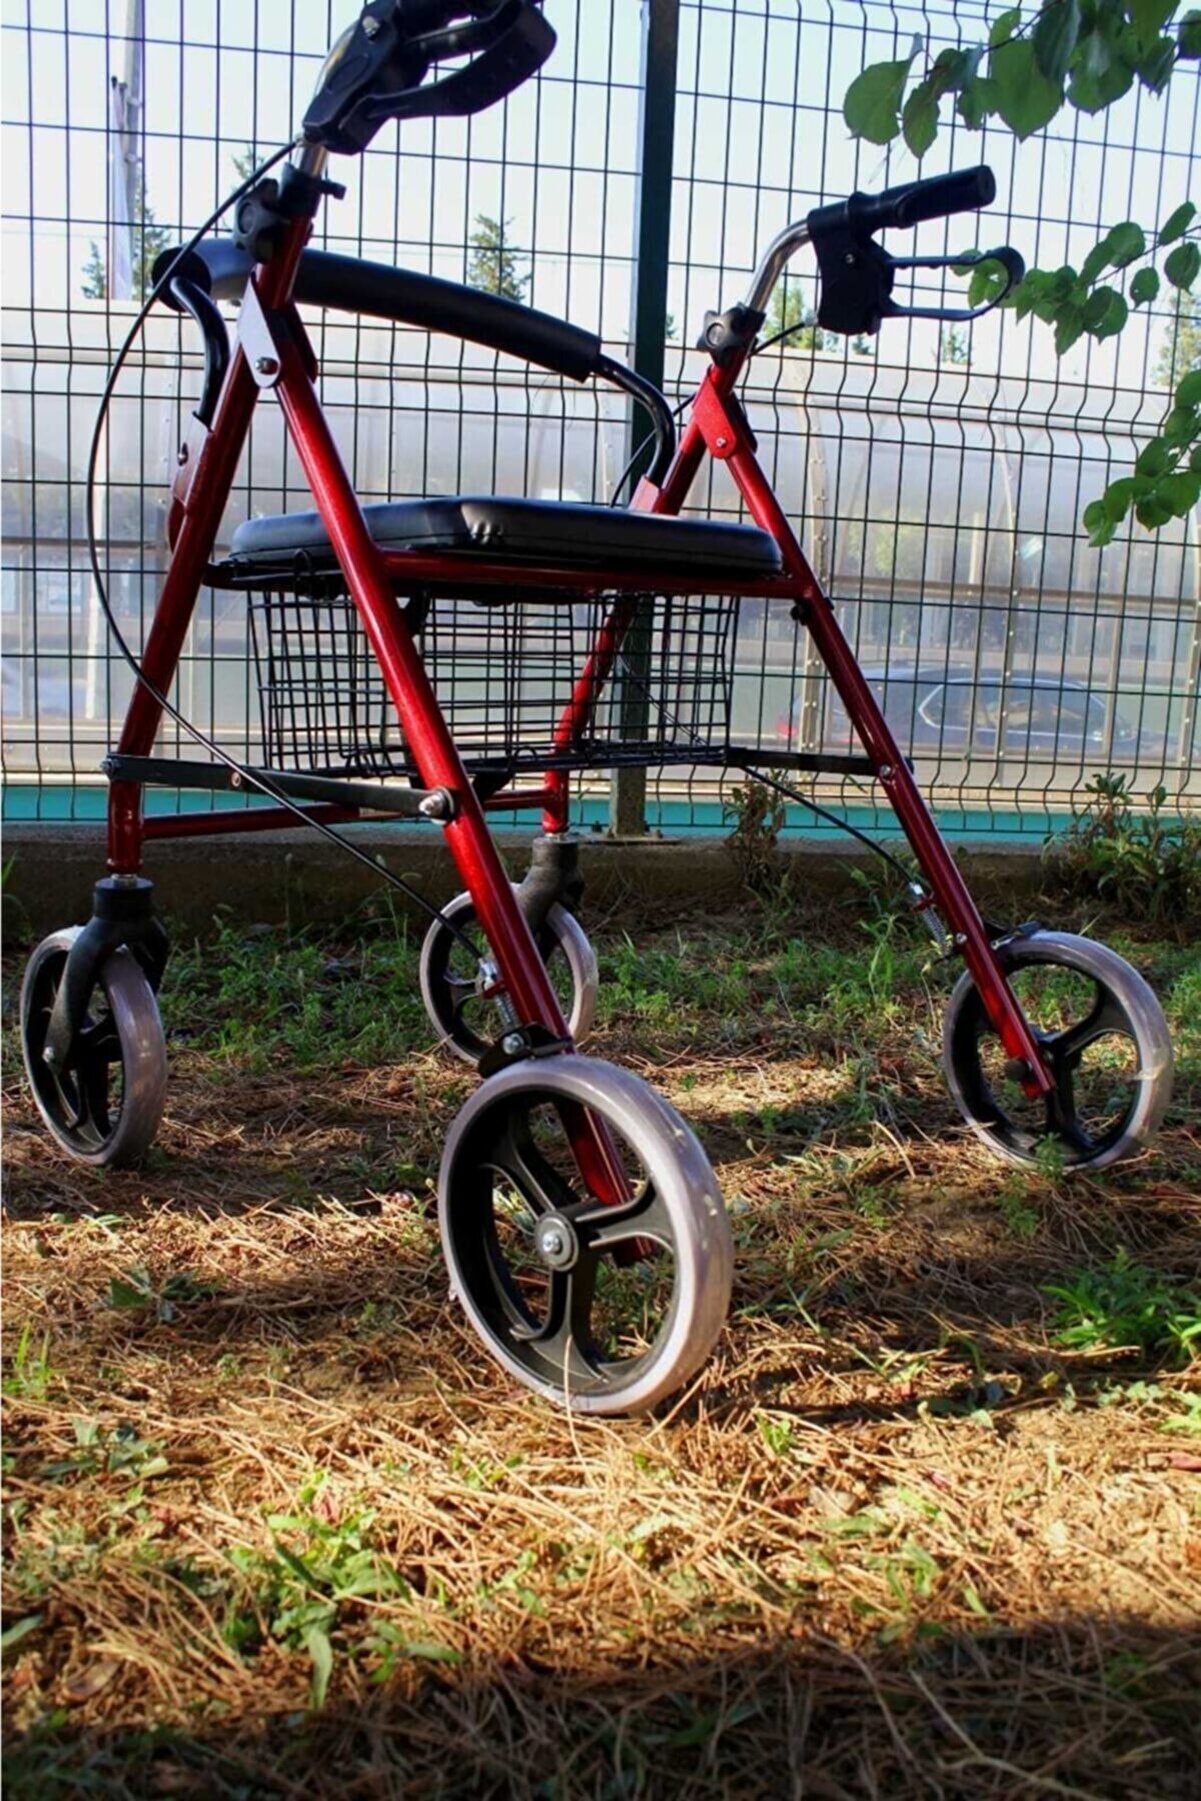 POYLİN Tekerlekli, Frenli, Sepetli Hasta Yardım Yürüteç Tekerlekli Sandalye